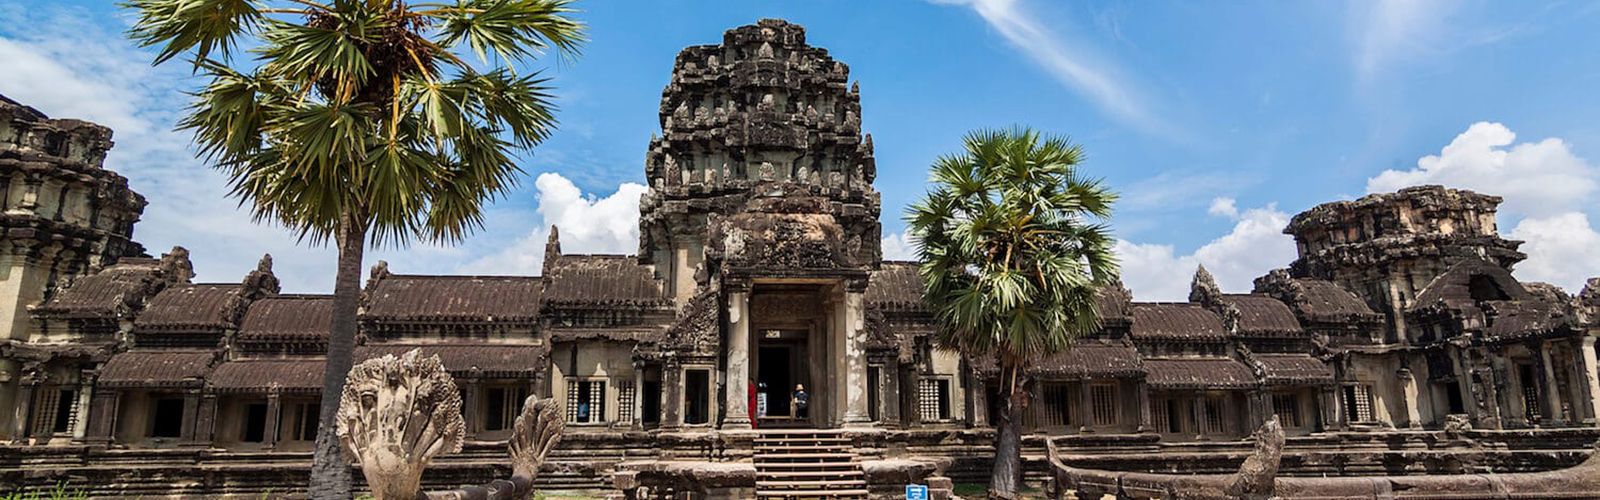 Best Of Cambodia And Vietnam 